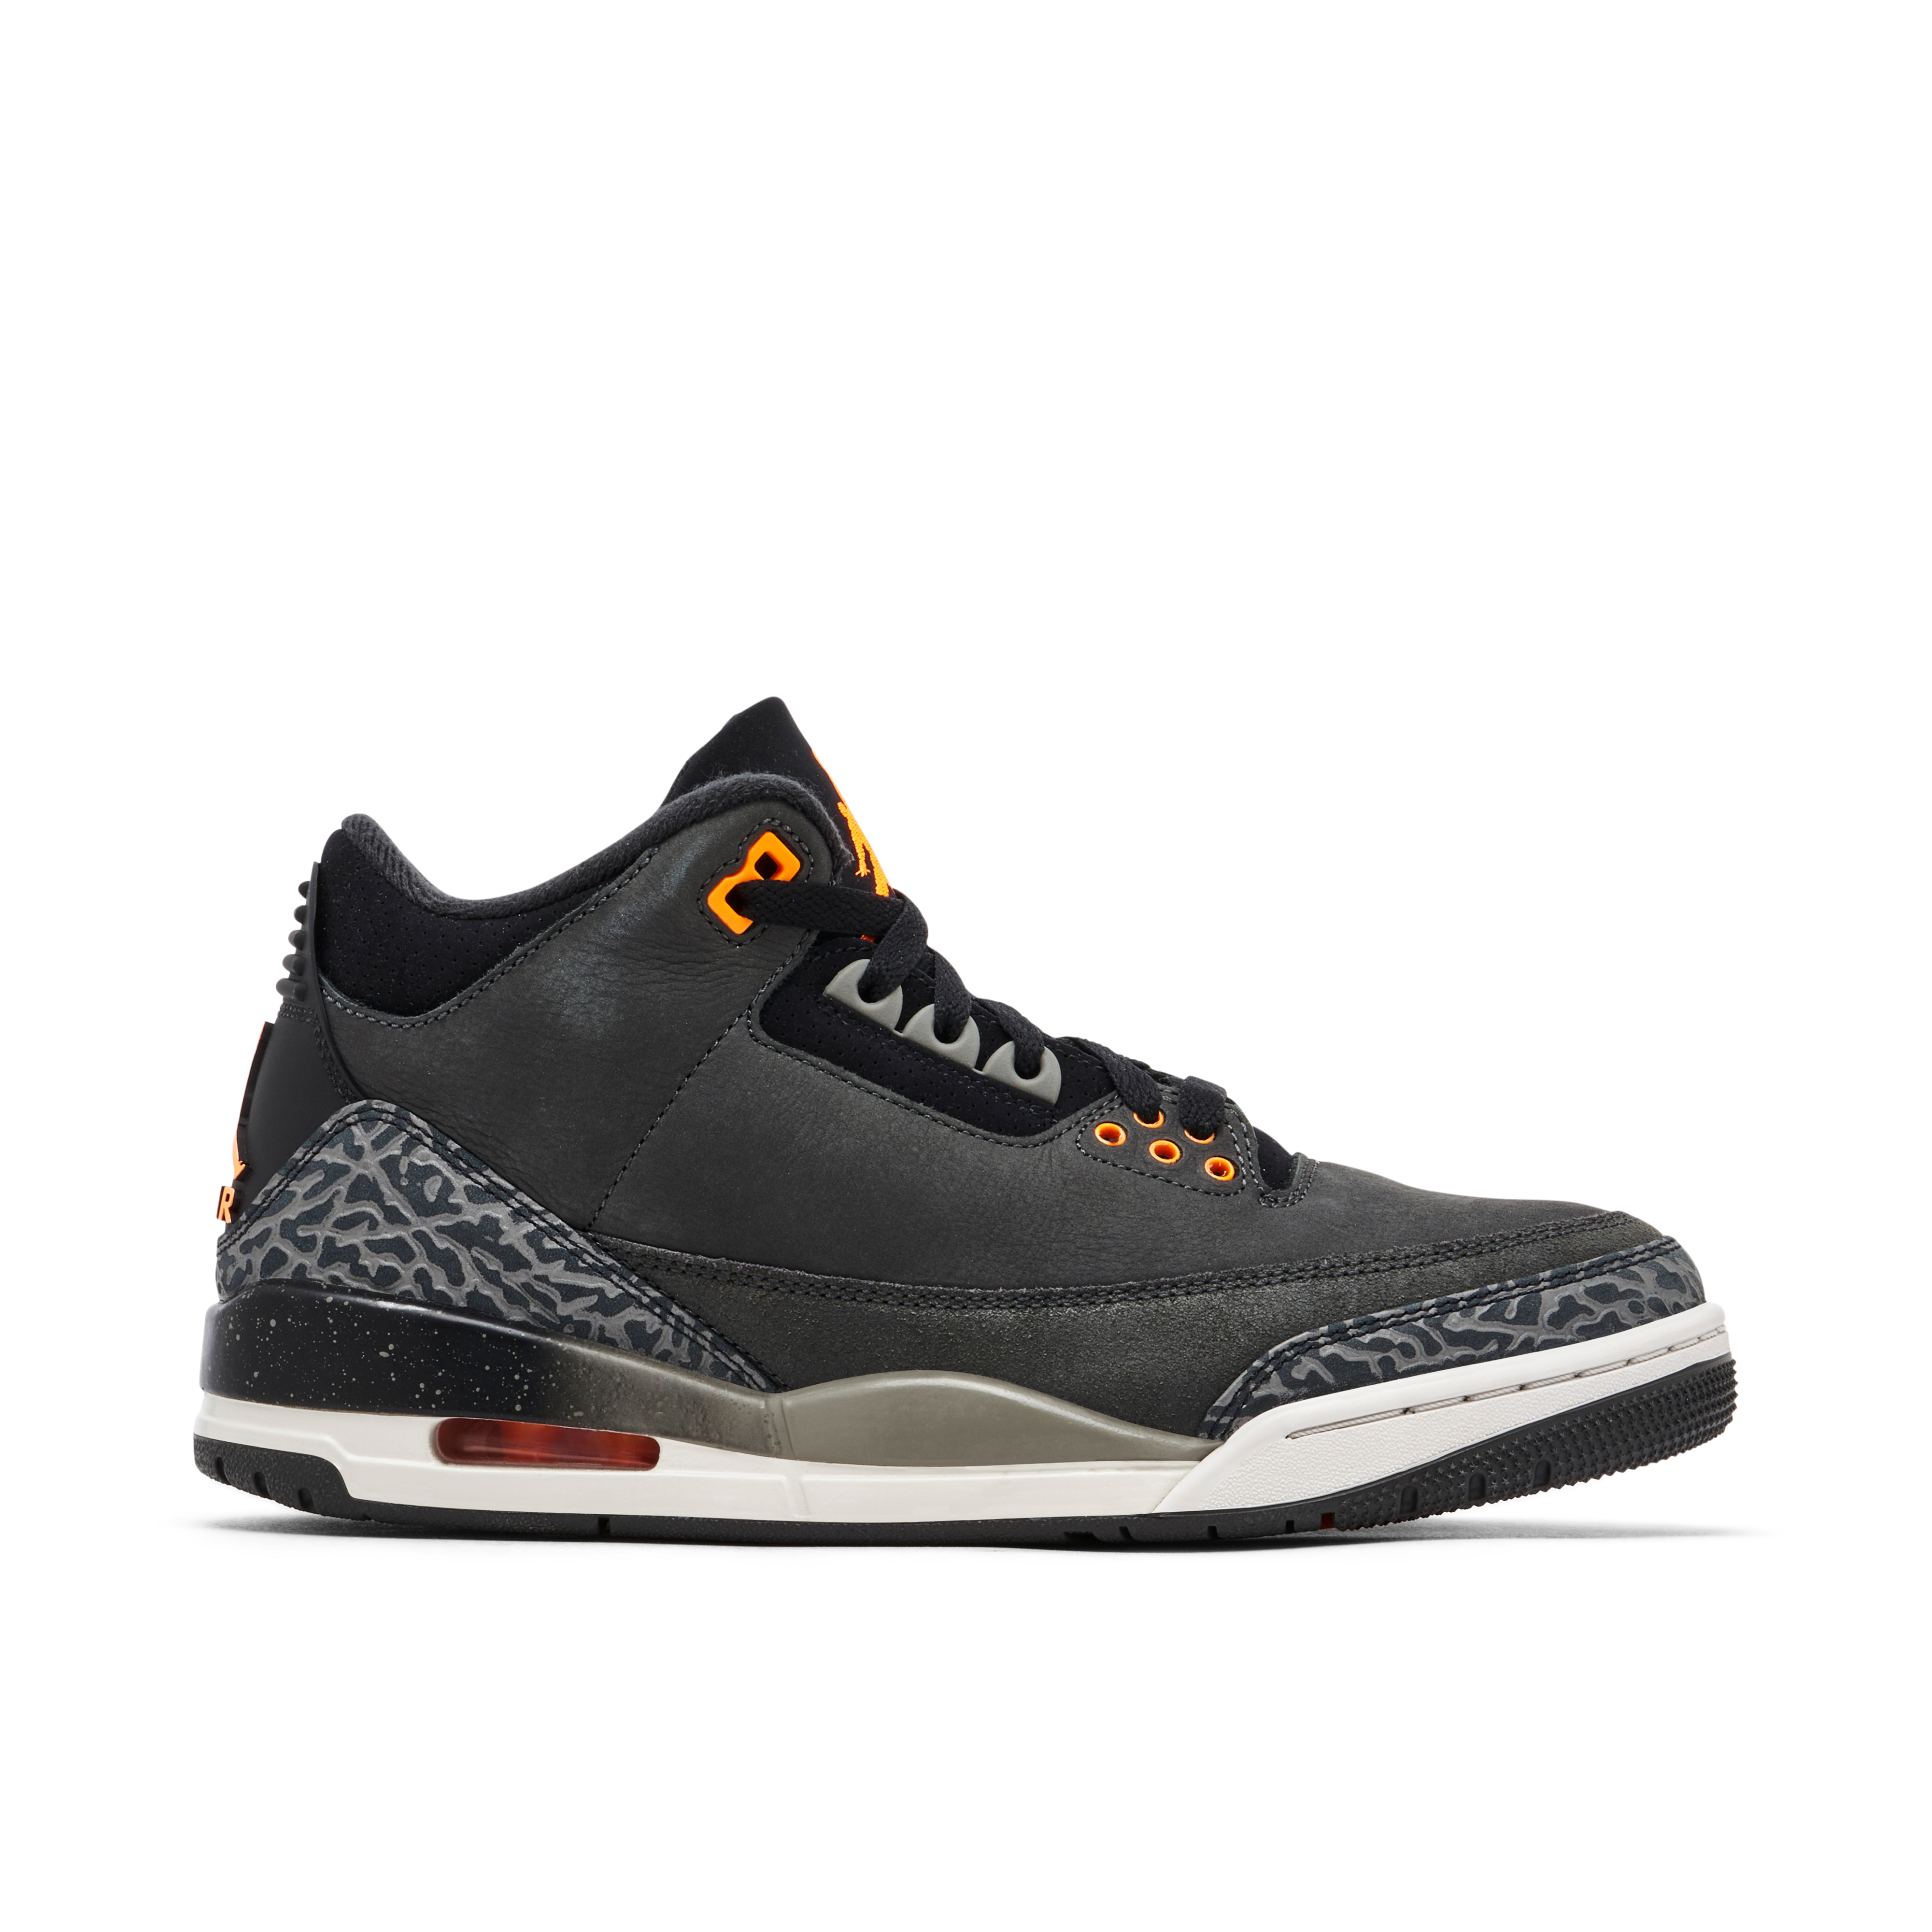 Air Jordan 3 Trainers | Online Air Jordan Sneakers | Laced